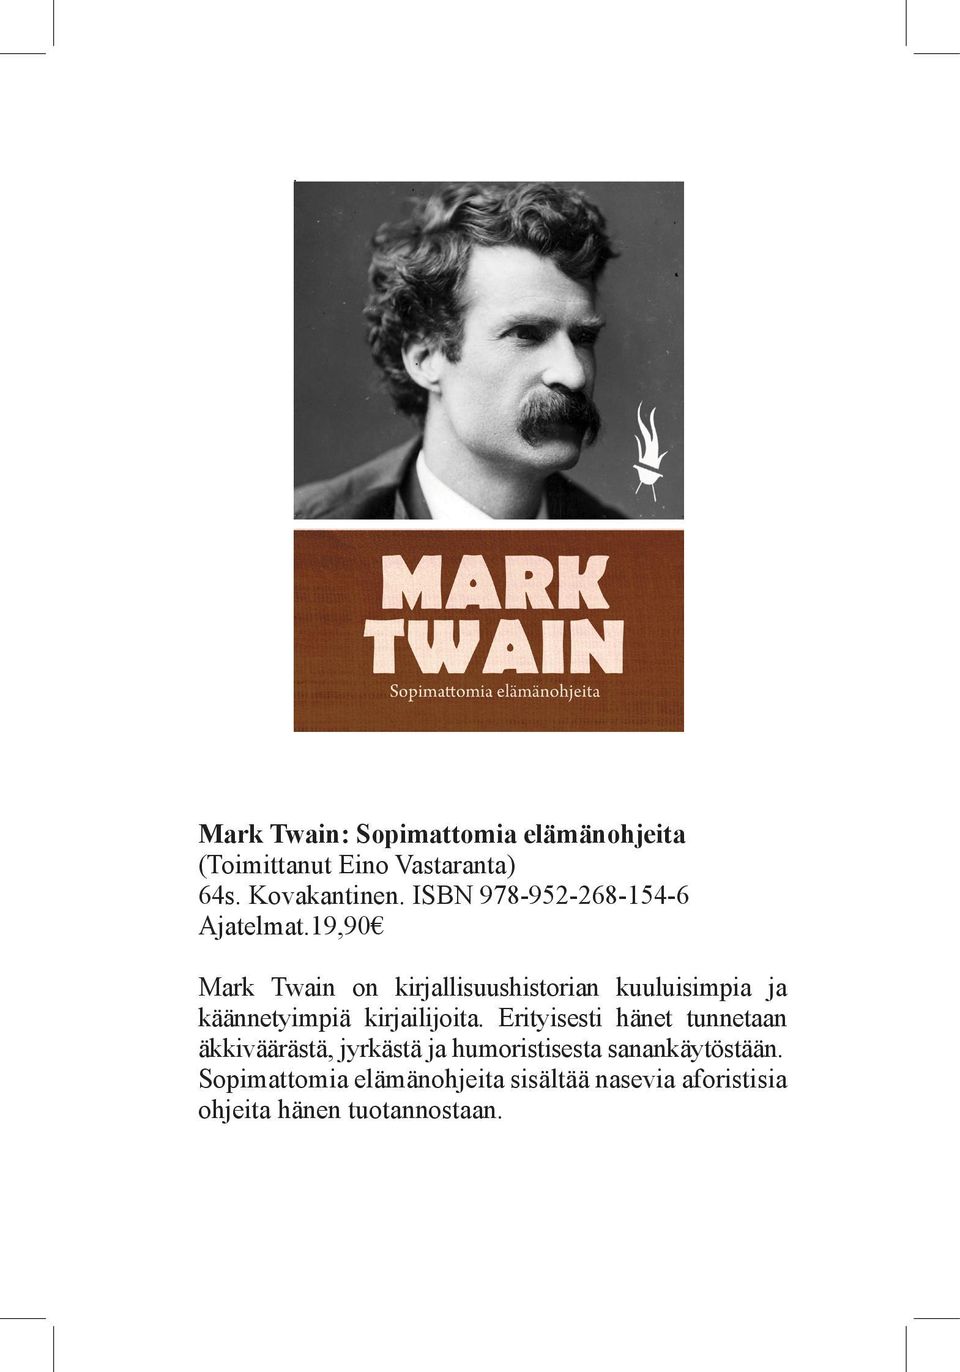 19,90 Mark Twain on kirjallisuushistorian kuuluisimpia ja käännetyimpiä kirjailijoita.